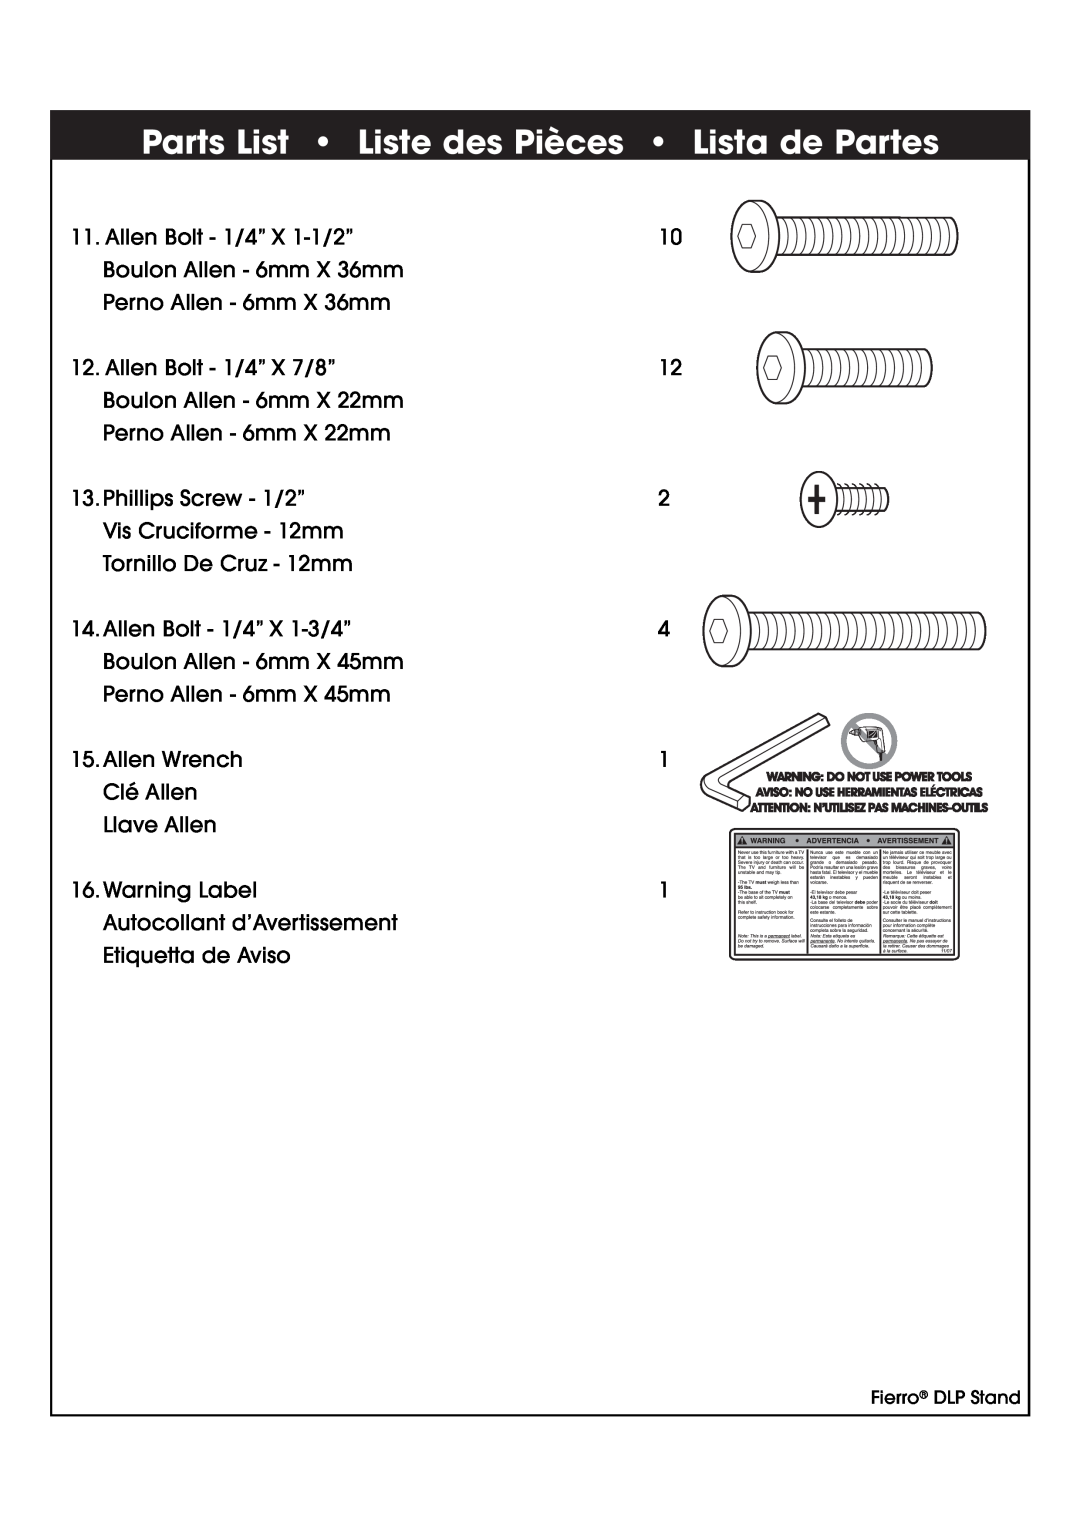 Studio RTA 402875 manual Parts List Liste des Pièces Lista de Partes, Allen Bolt - 1/4” X 1-1/2” 